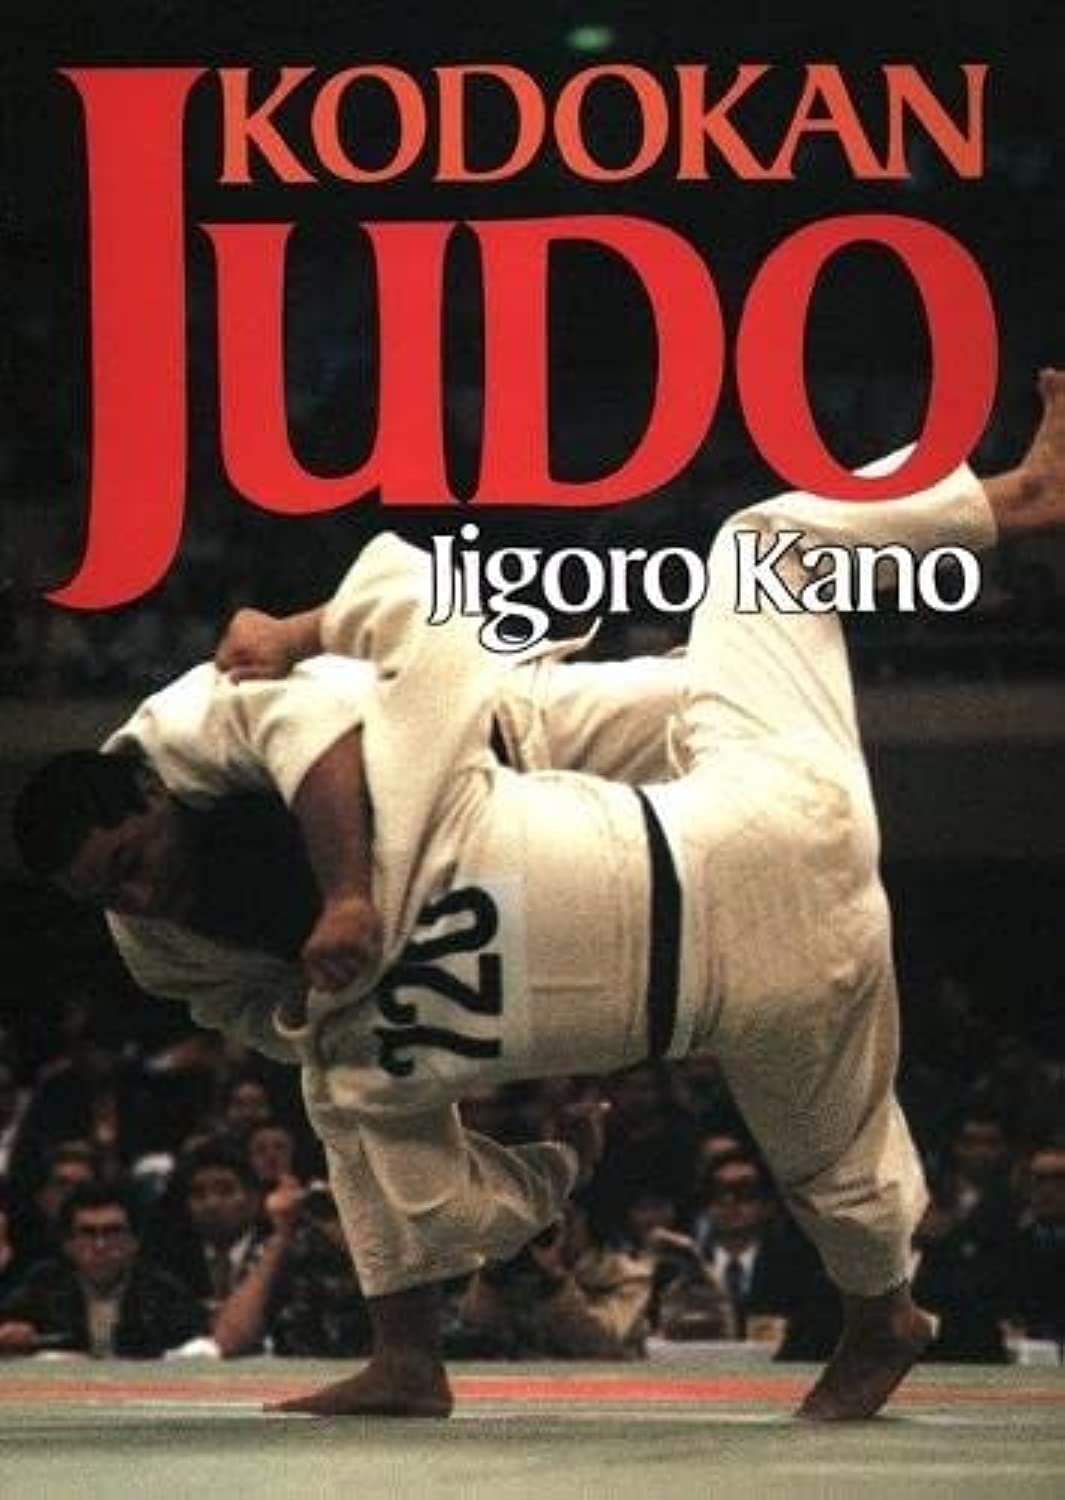 Kodokan Judo Book by Jigoro Kano (Preowned)